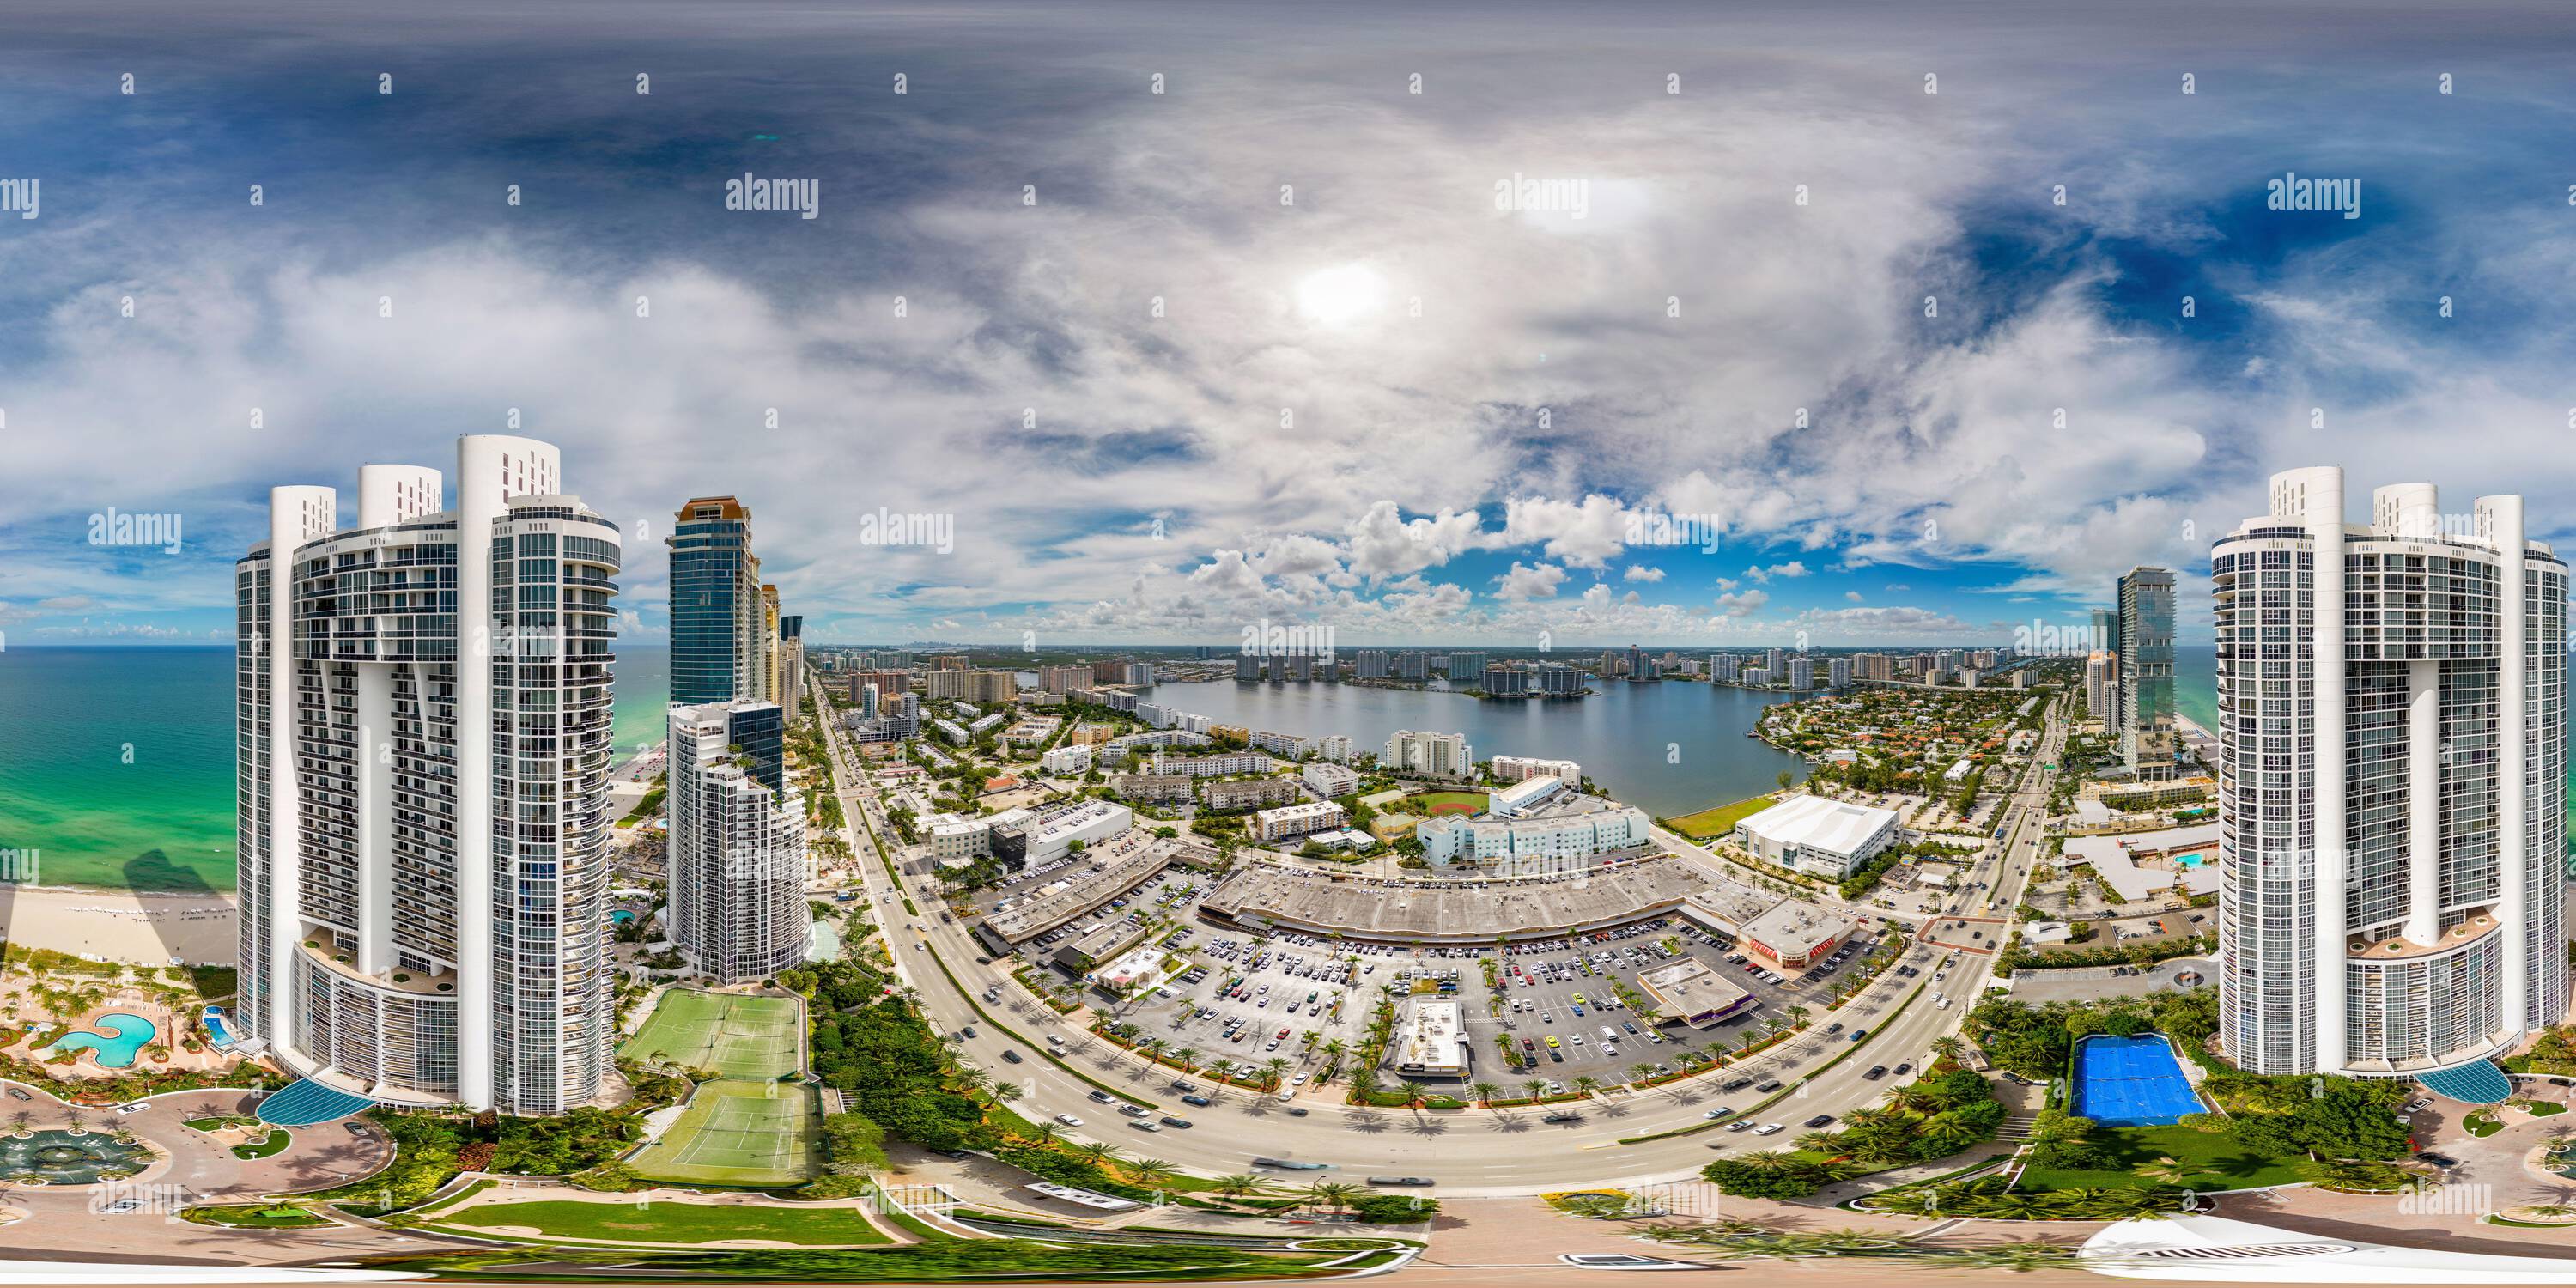 Vue panoramique à 360° de Sunny Isles Beach, FL, Etats-Unis - 23 août 2022: Photographie aérienne 360 Trump Towers Sunny Isles Beach FL